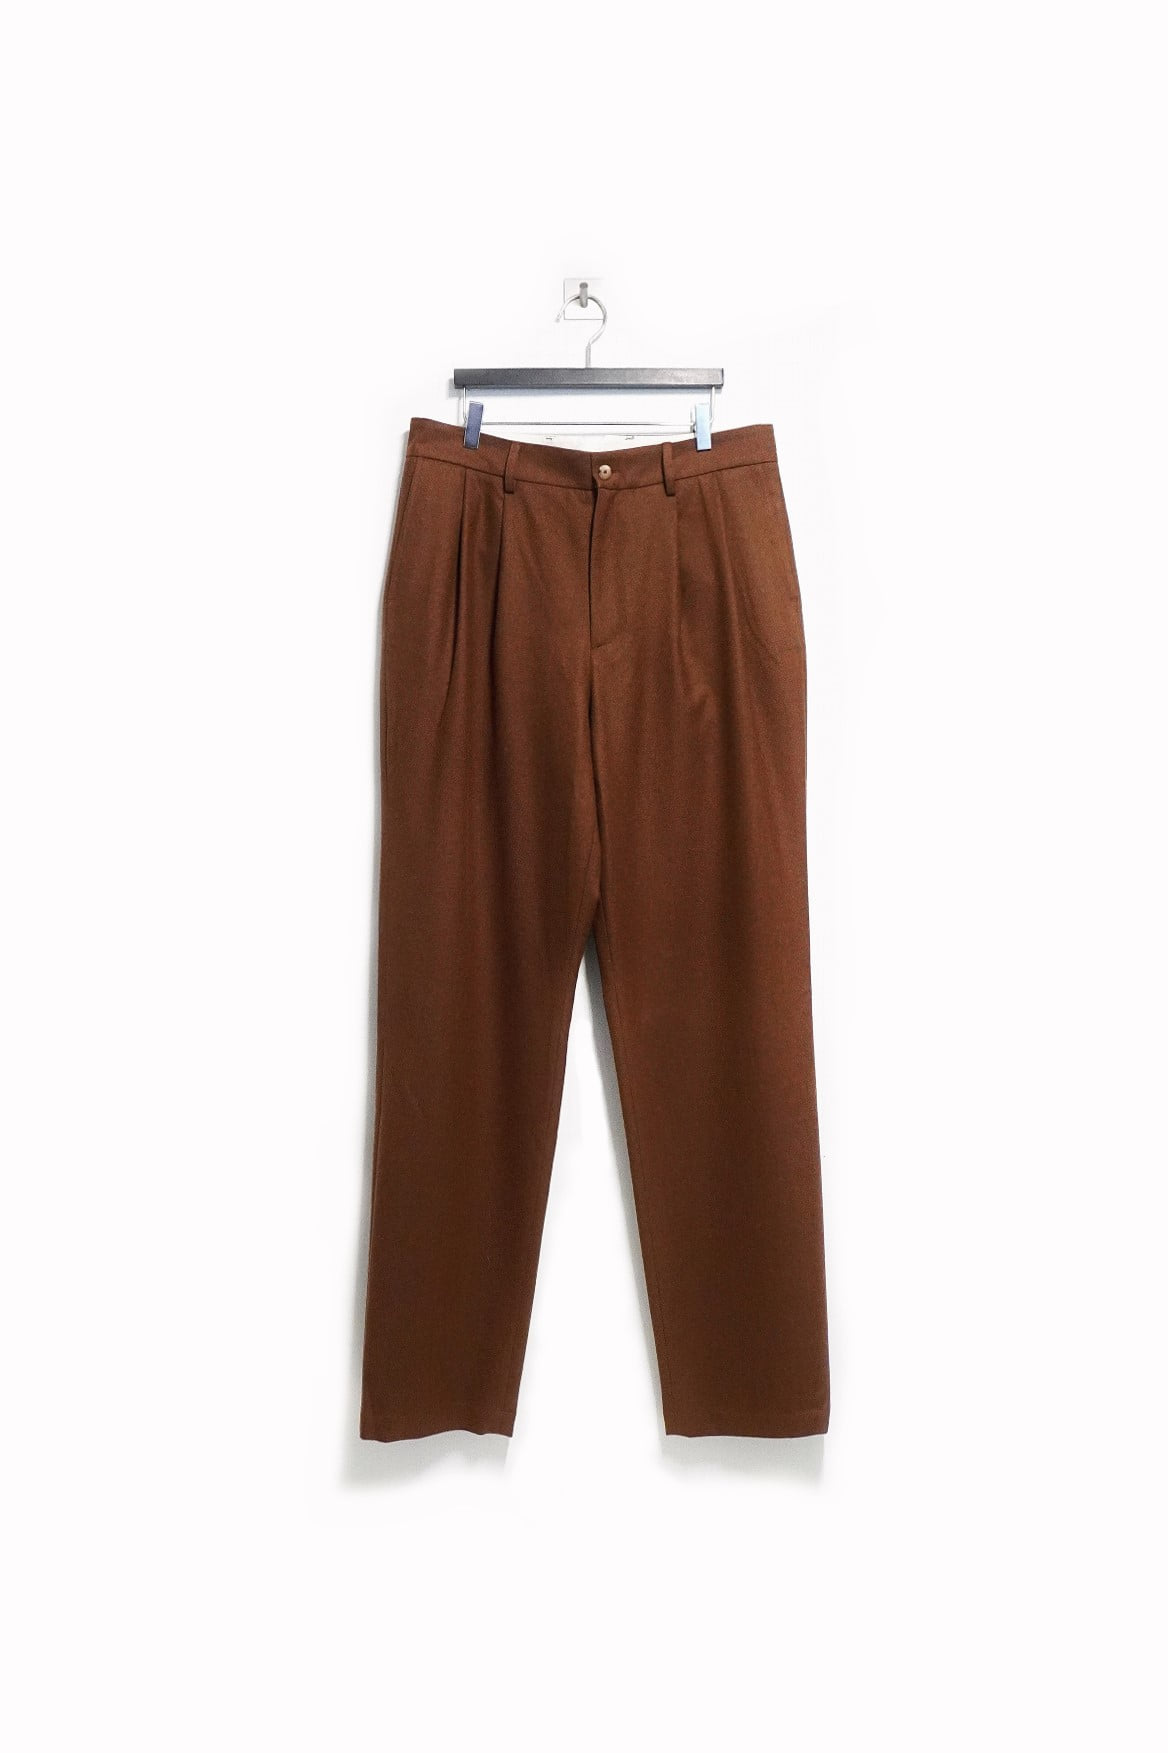 [DE BONNE FACTURE] Two Pleats Large Trousers – Caramel